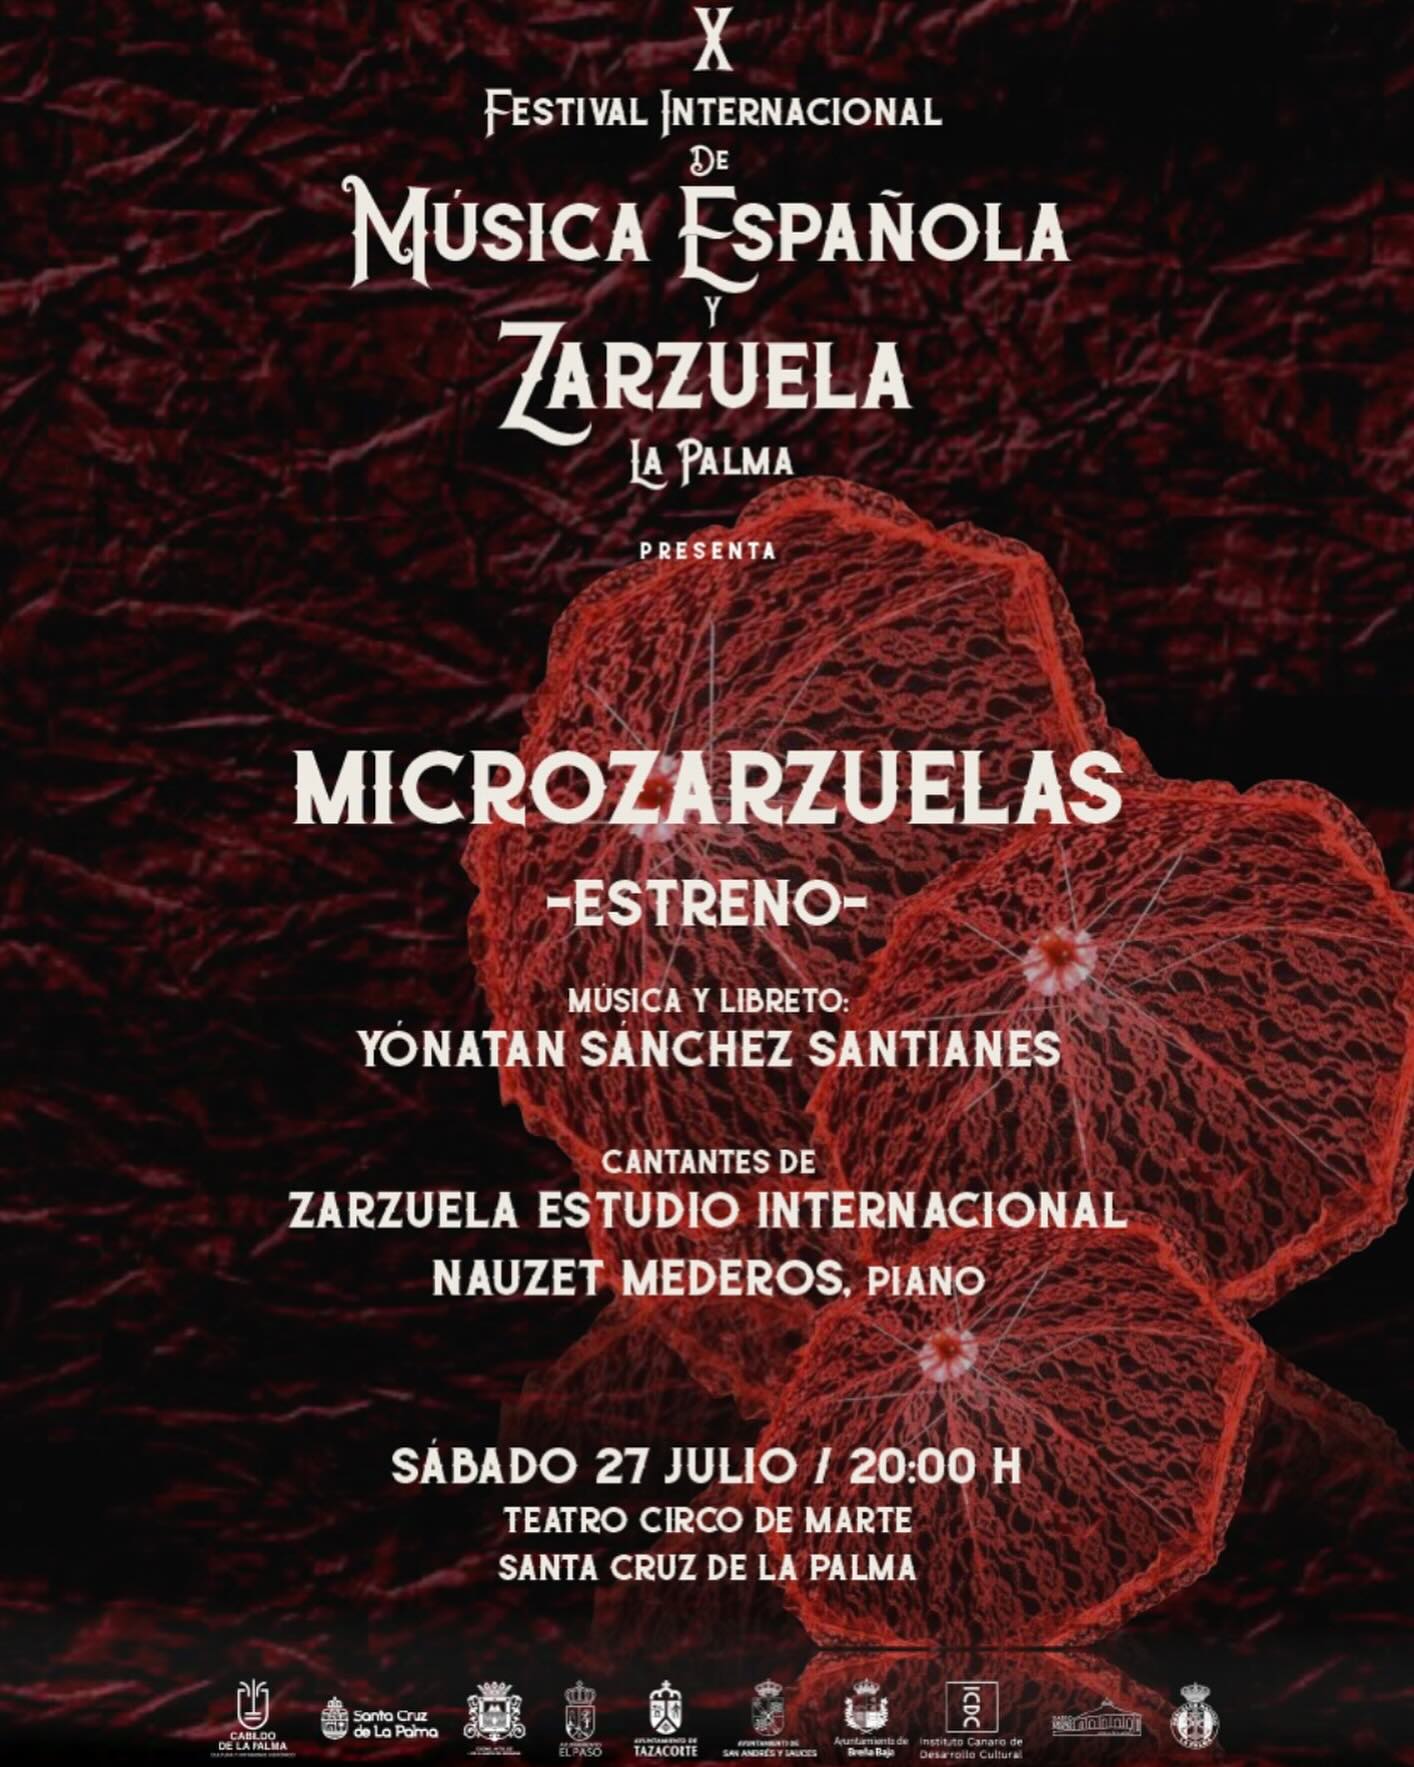 X Festival Internacional de Música Española y Zarzuela (Microzarzuelas)